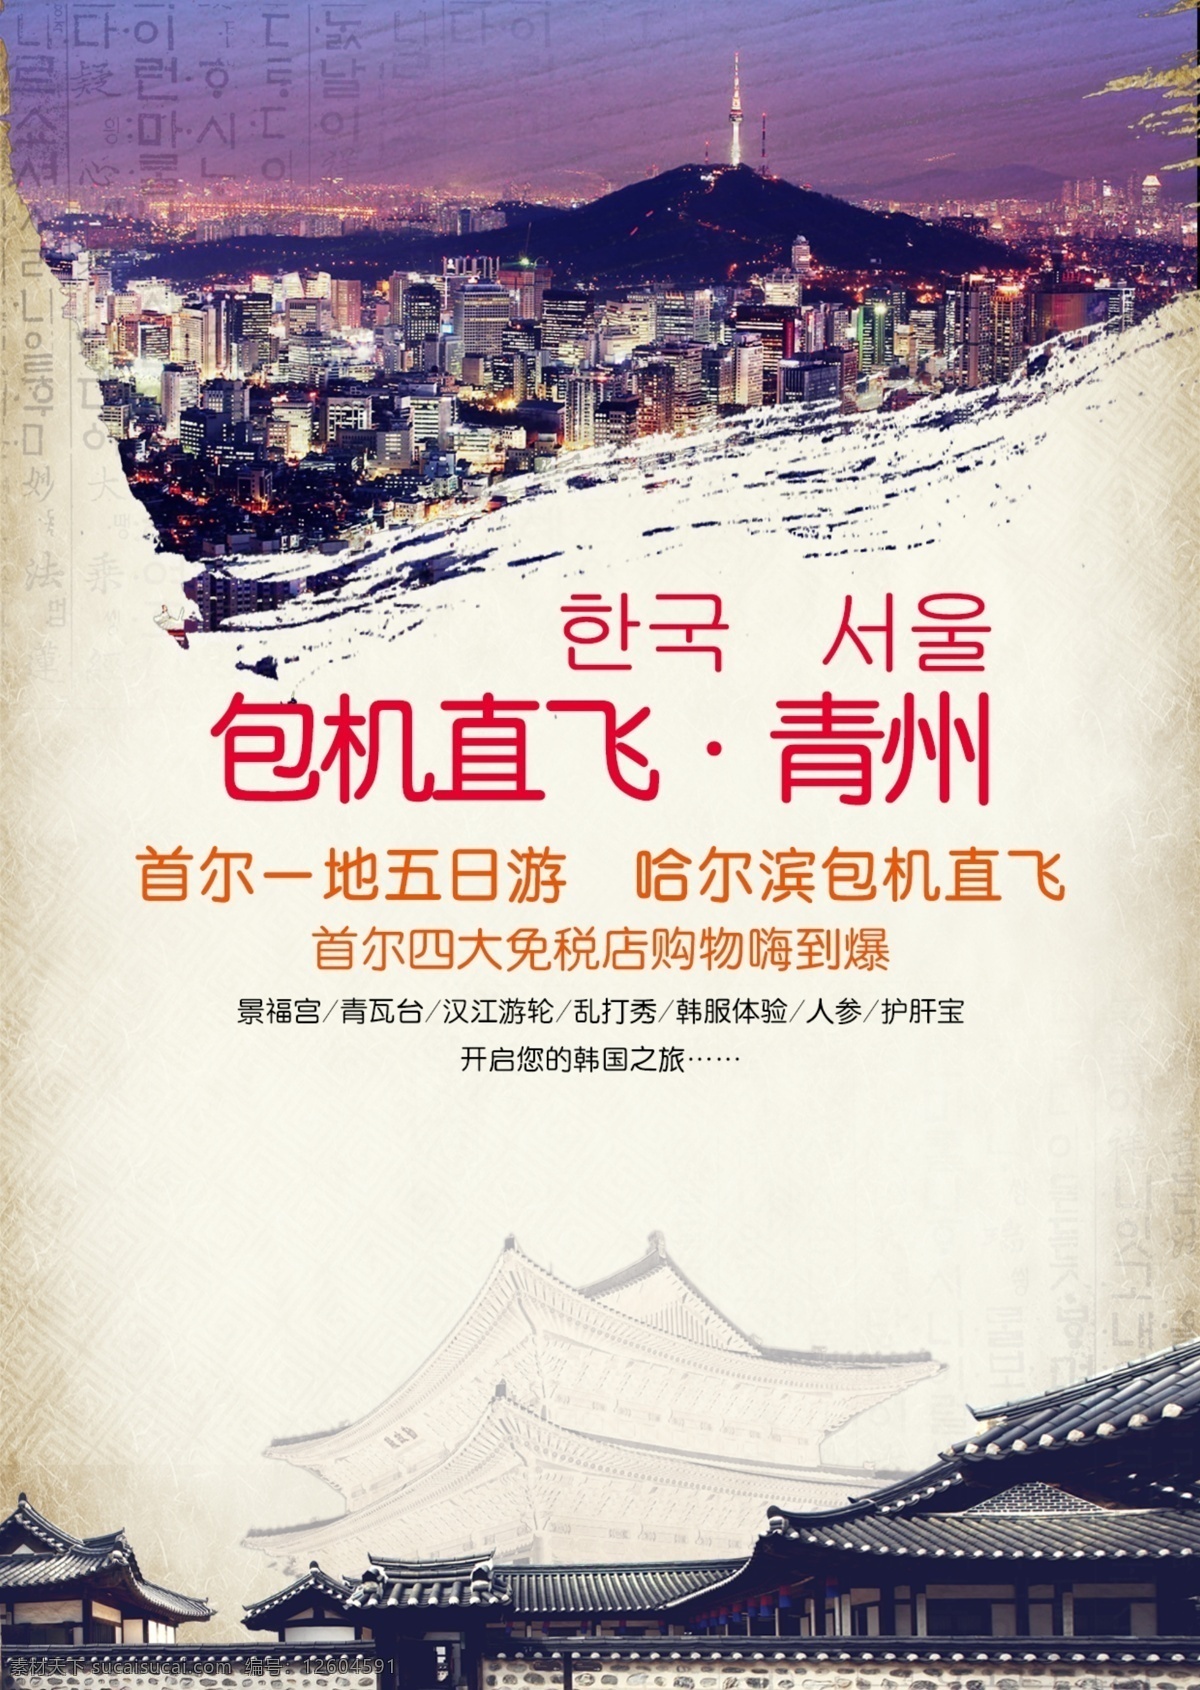 包机 直 飞 青州 首 尔 旅游 海报 直飞 首尔 旅游海报 韩国 韩国首尔 白色